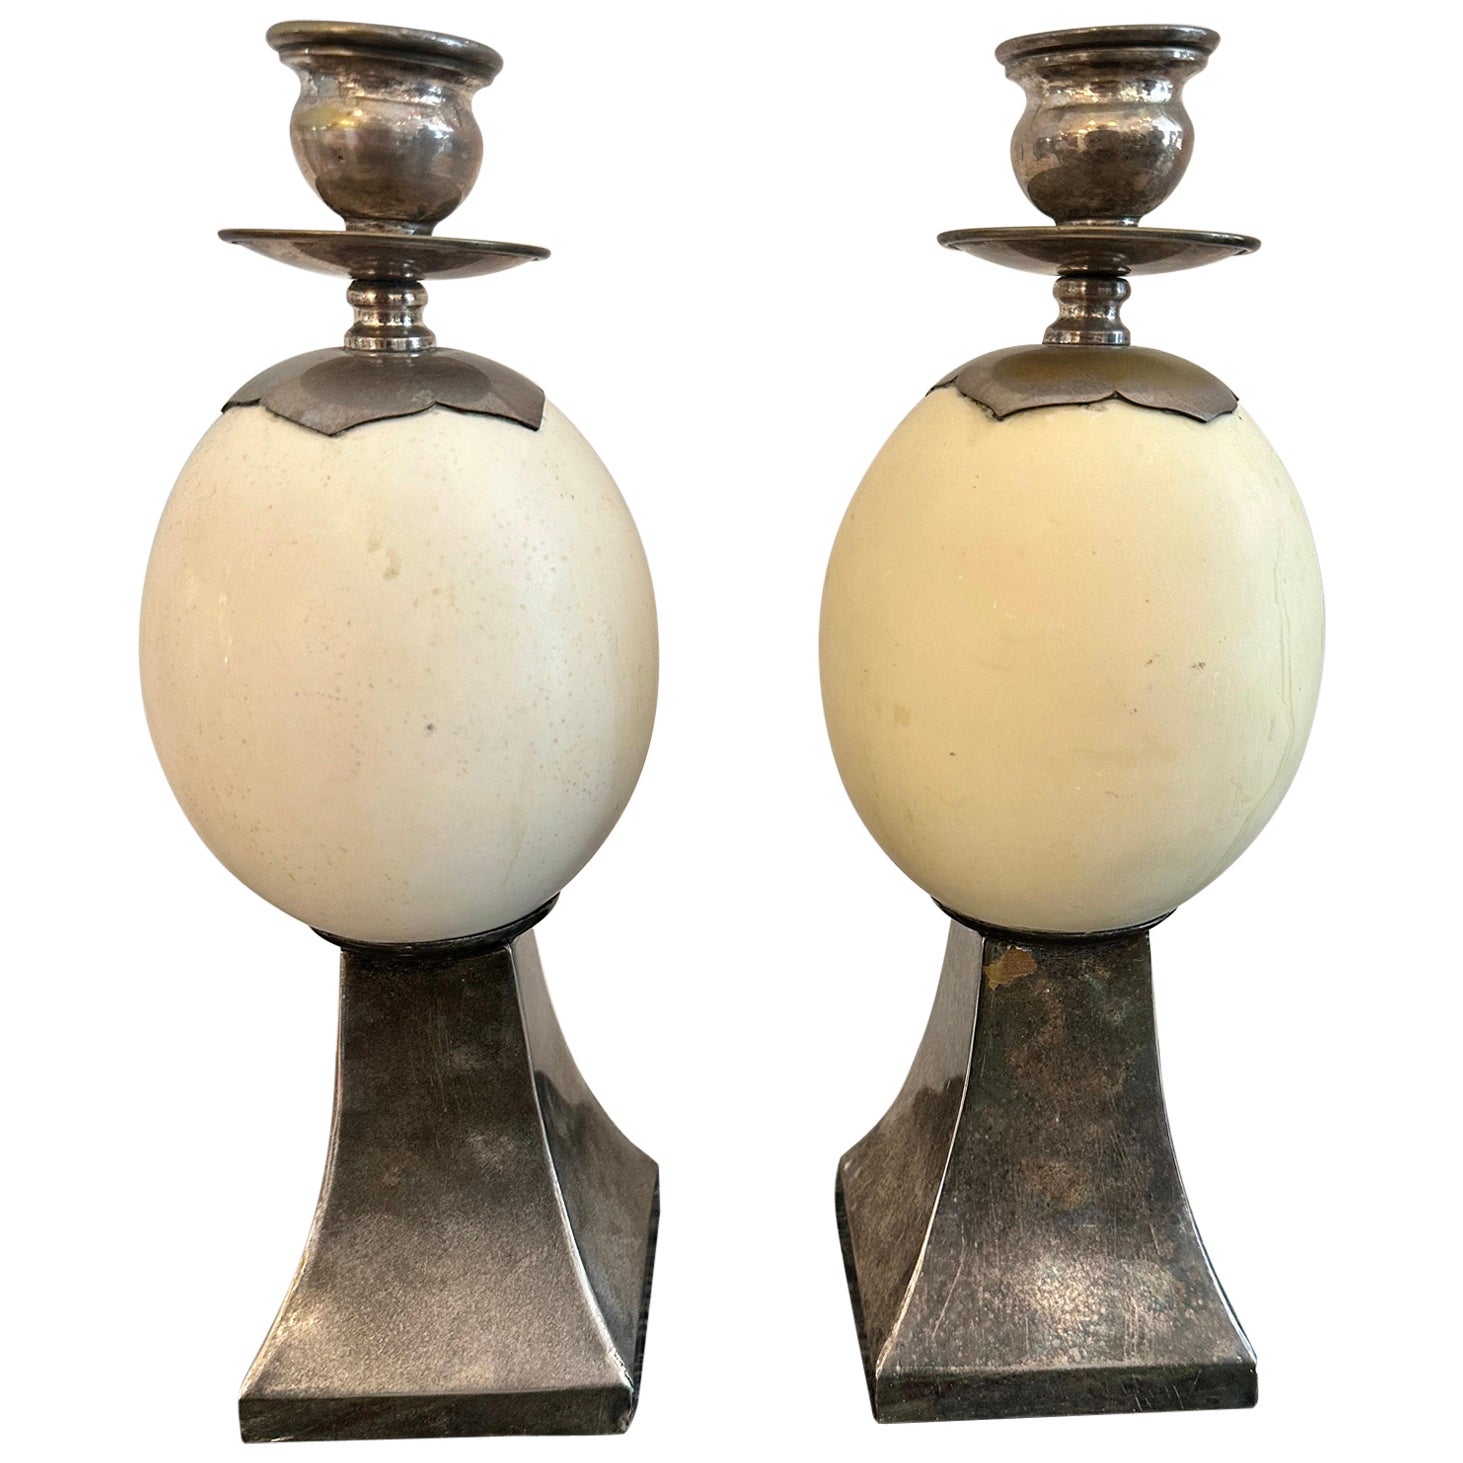 Paire de chandeliers en argent montés sur œuf d'autruche, style Anthony Redmile